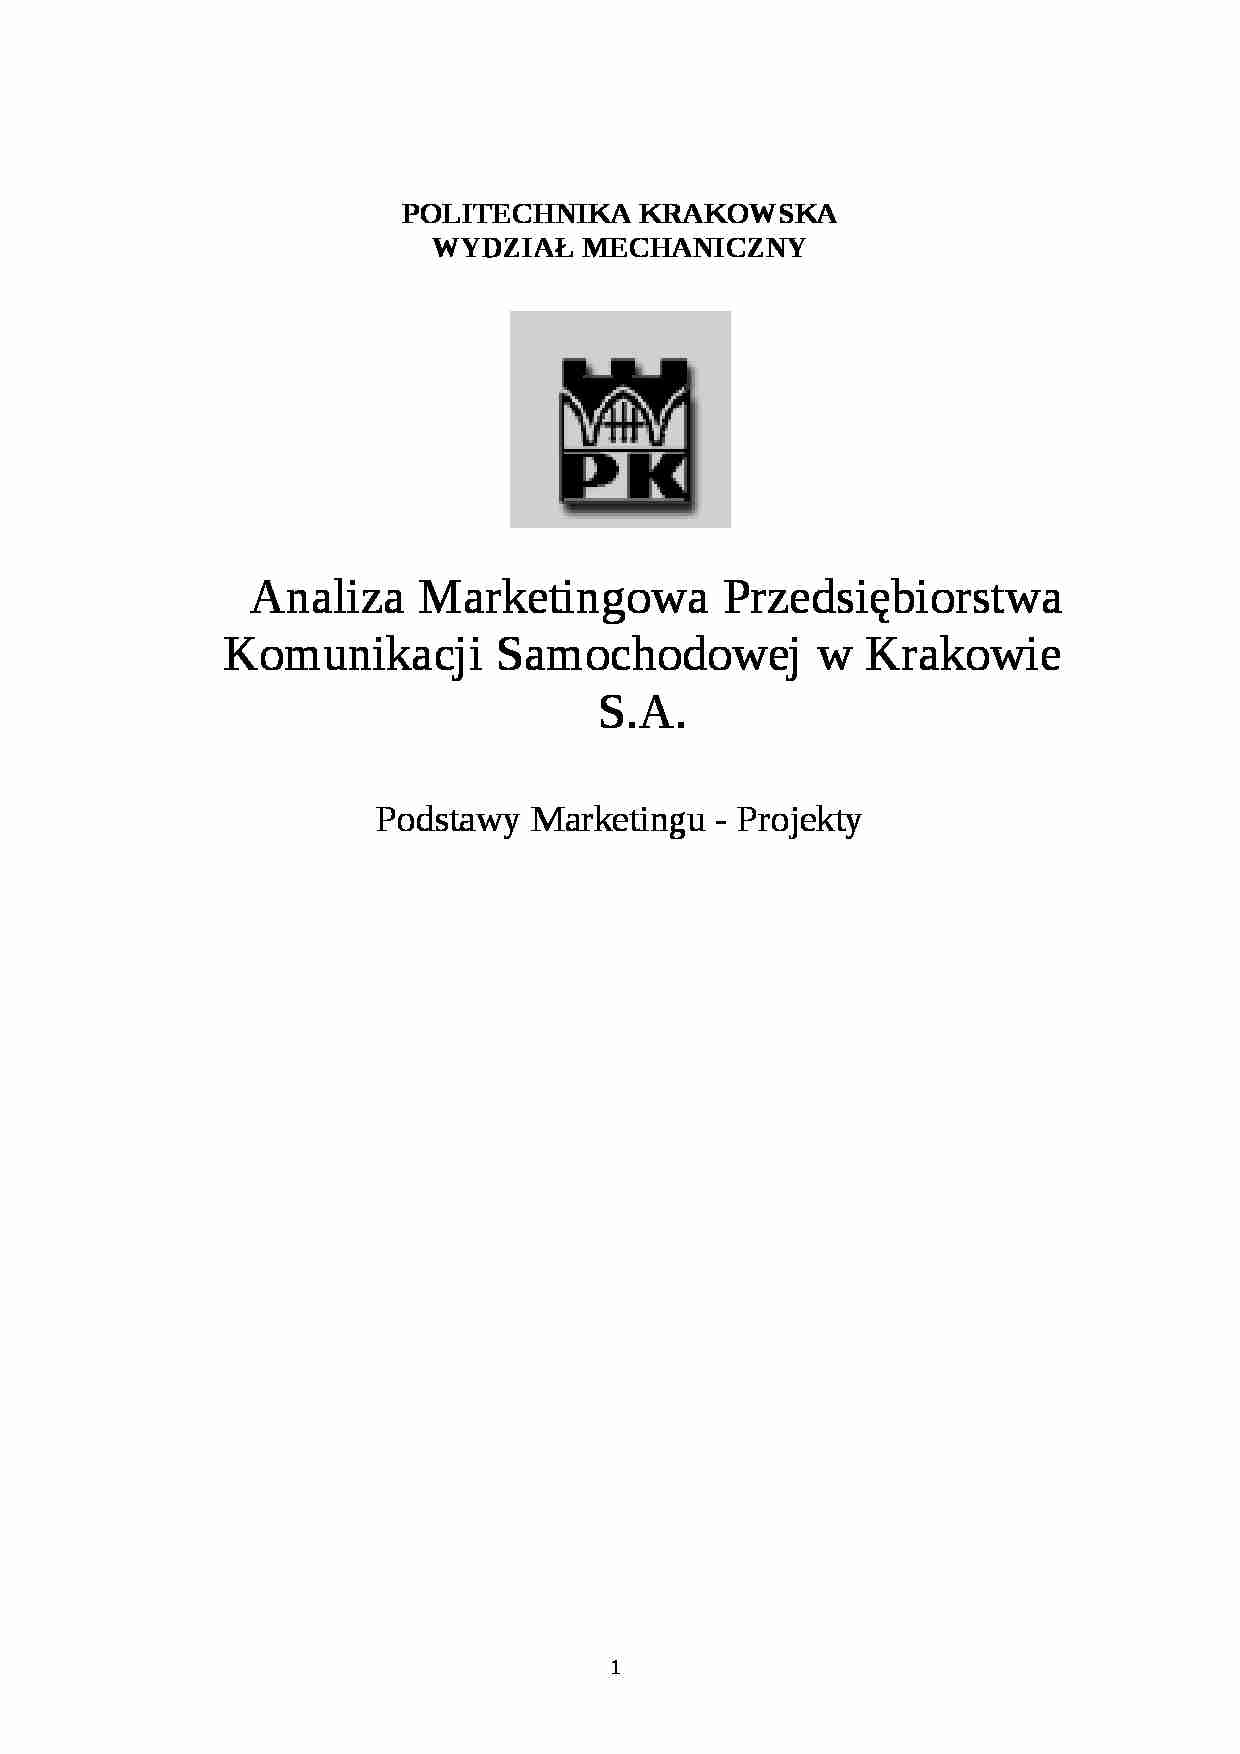 Analiza Marketingowa Przedsiębiorstwa Komunikacji Samochodowej w Krakowie S.A. - PKS - strona 1